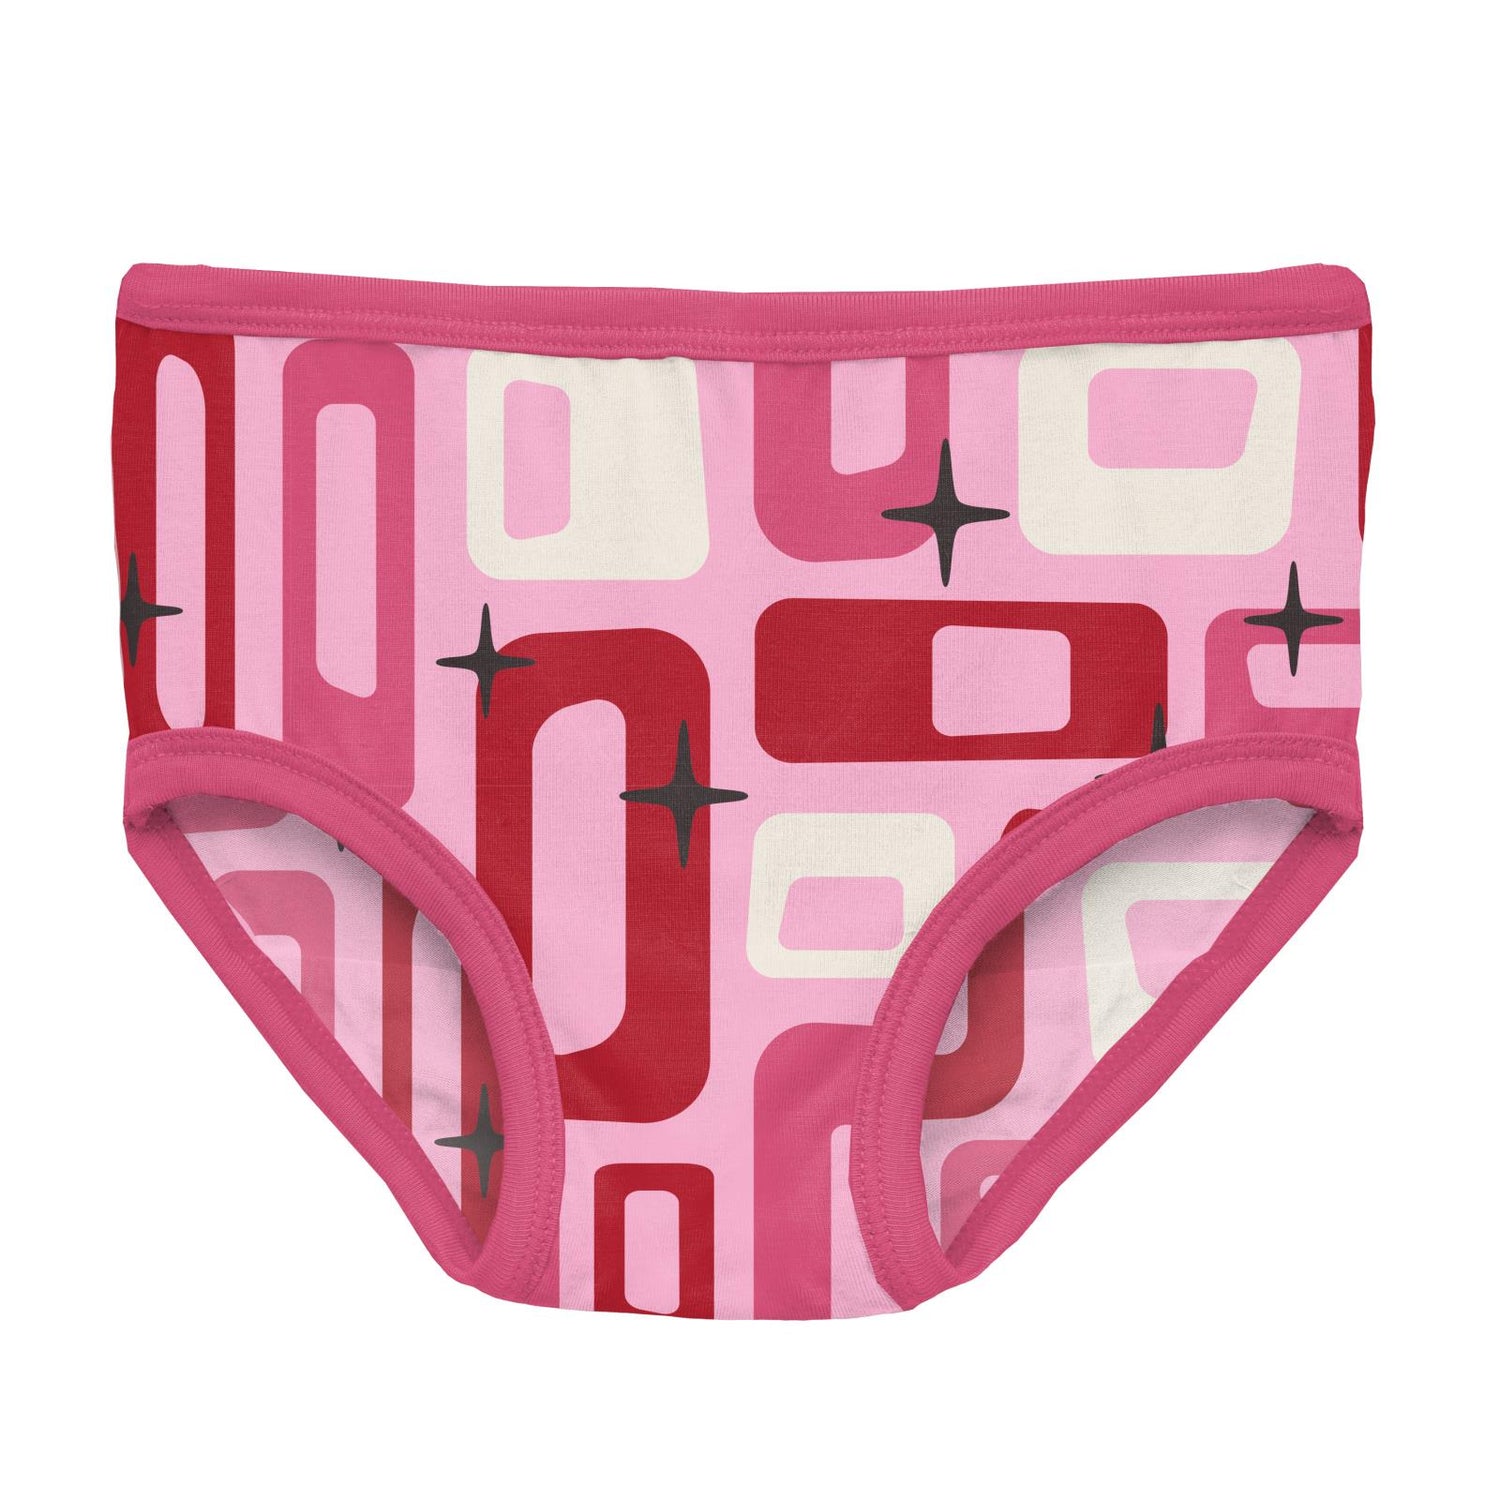 LAURA ASHLEY 5-Pair Cotton Spandex Briefs Underwear Panties Girls Size S  6/6X